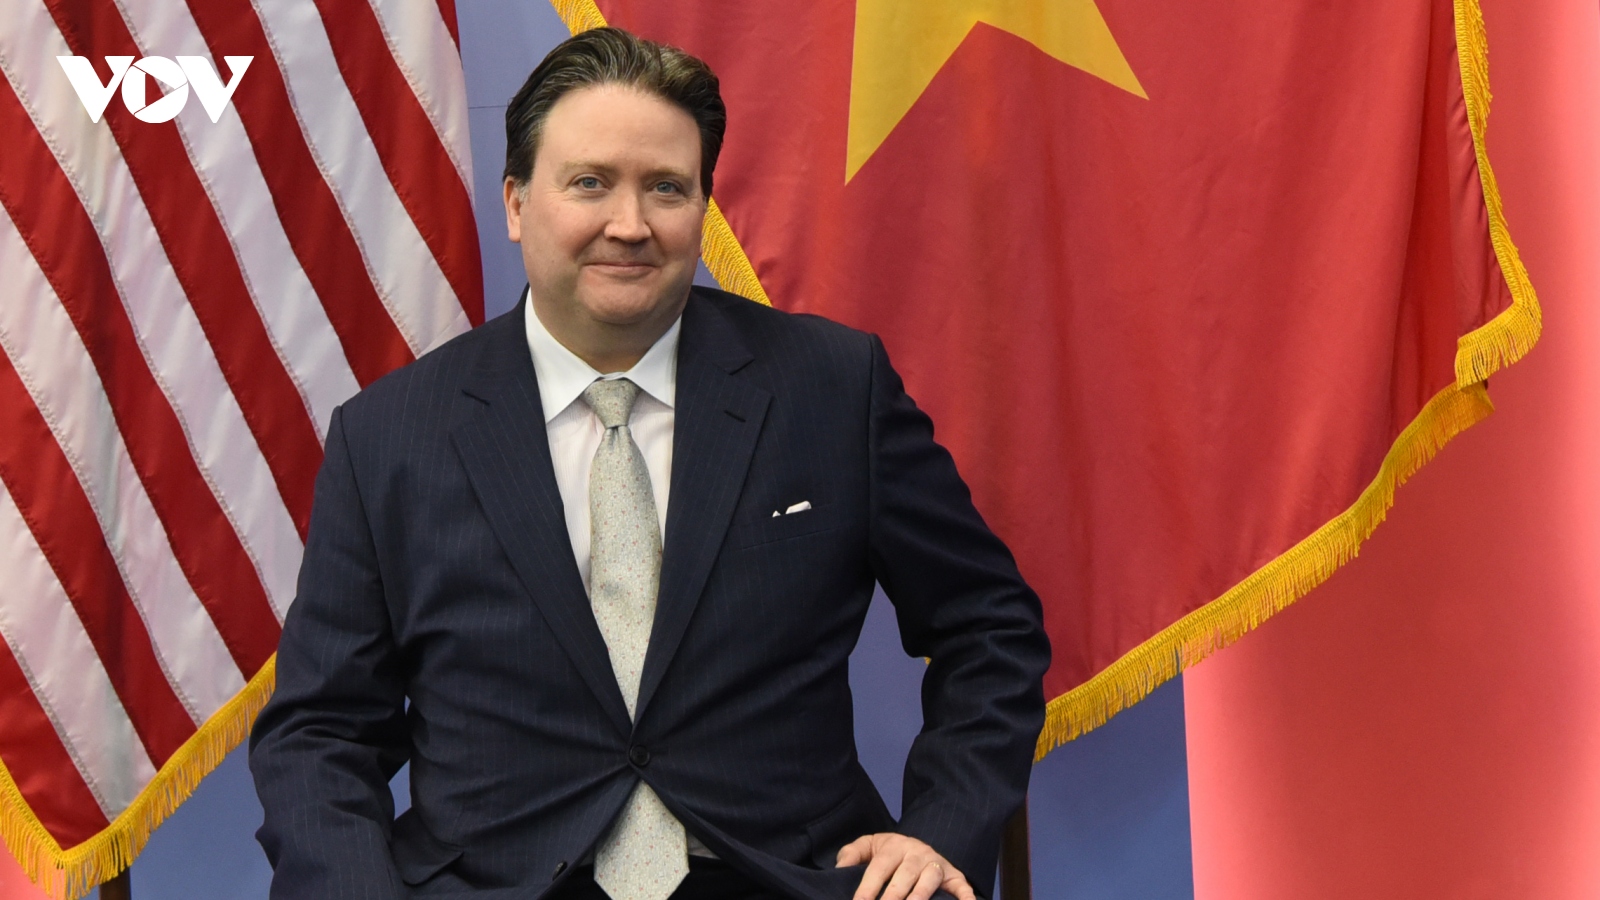 Đại sứ Hoa Kỳ đặt nhiều kỳ vọng vào chuyến thăm của Thủ tướng Phạm Minh Chính